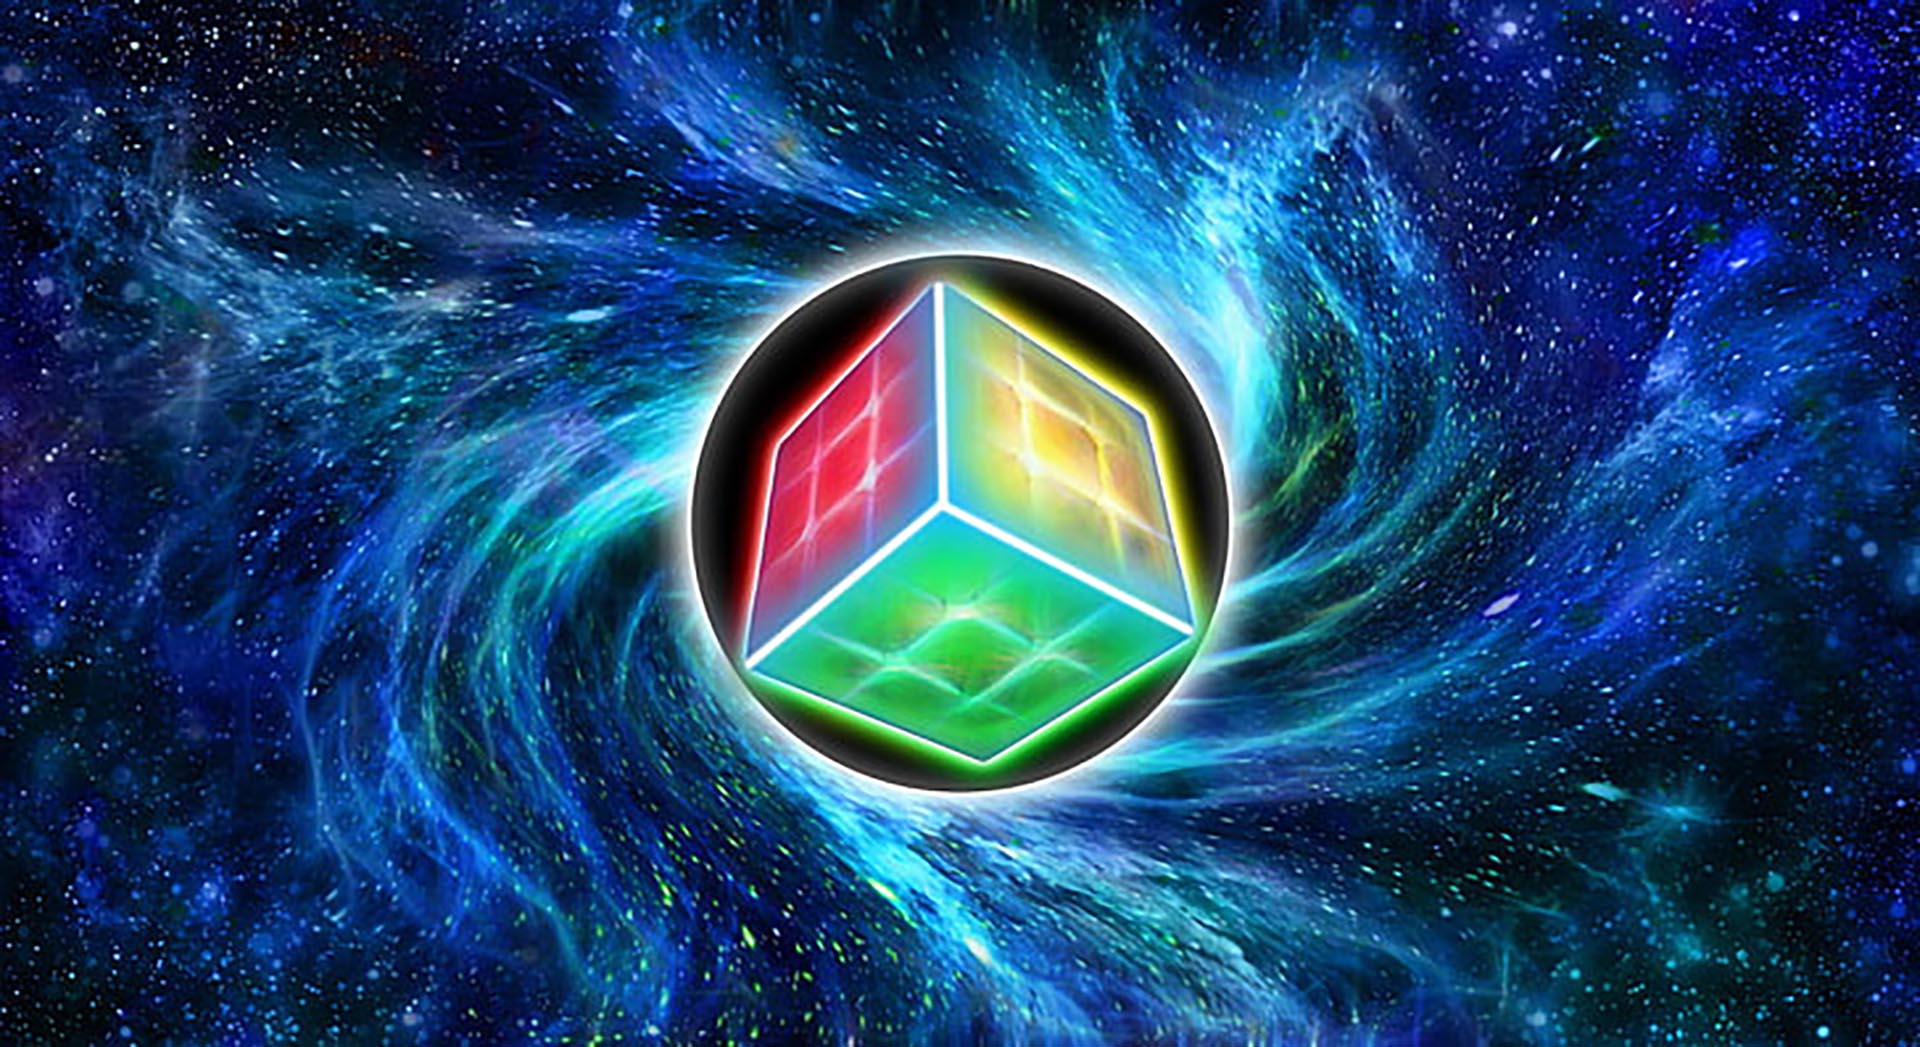 Bạn yêu thích trò chơi Rubik và muốn có một hình nền đẹp cho máy tính của mình? Hãy xem ngay bức ảnh hình nền Rubik đẹp với các màu sắc tươi tắn và hài hòa. Sẽ thật tuyệt vời khi mỗi lần mở máy tính, bạn lại được ngắm nhìn vào hình Rubik đẹp mắt này.